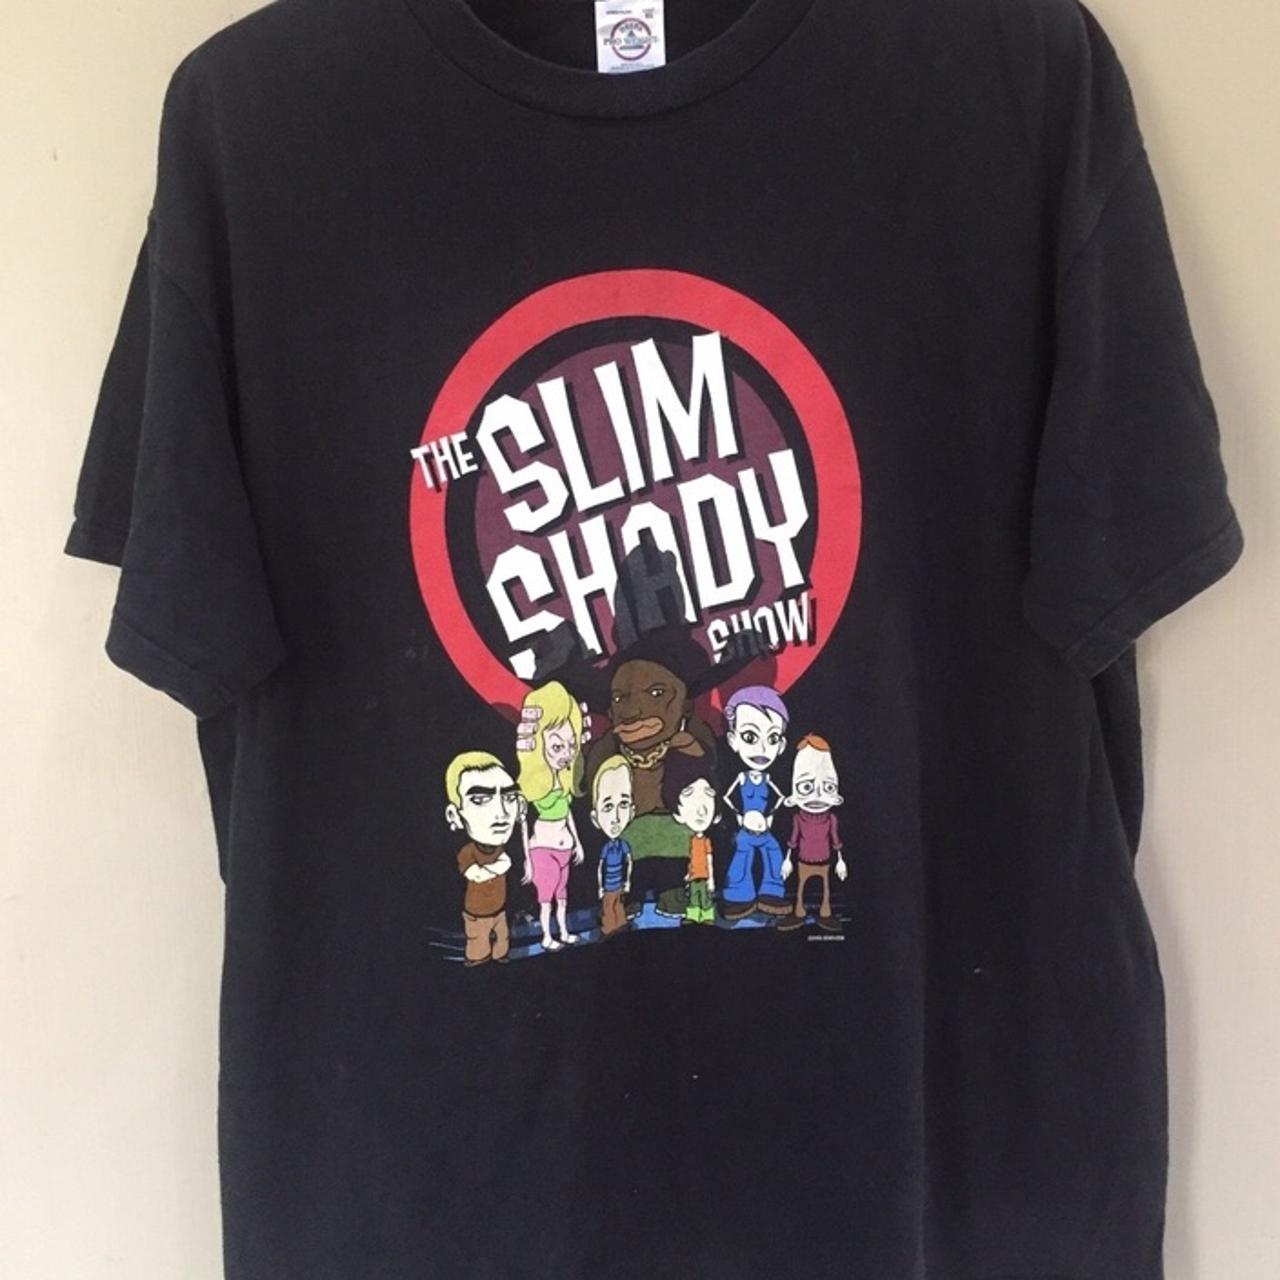 Vintage 2000 Eminem The Slim Shady Show T Shirt XL - Depop